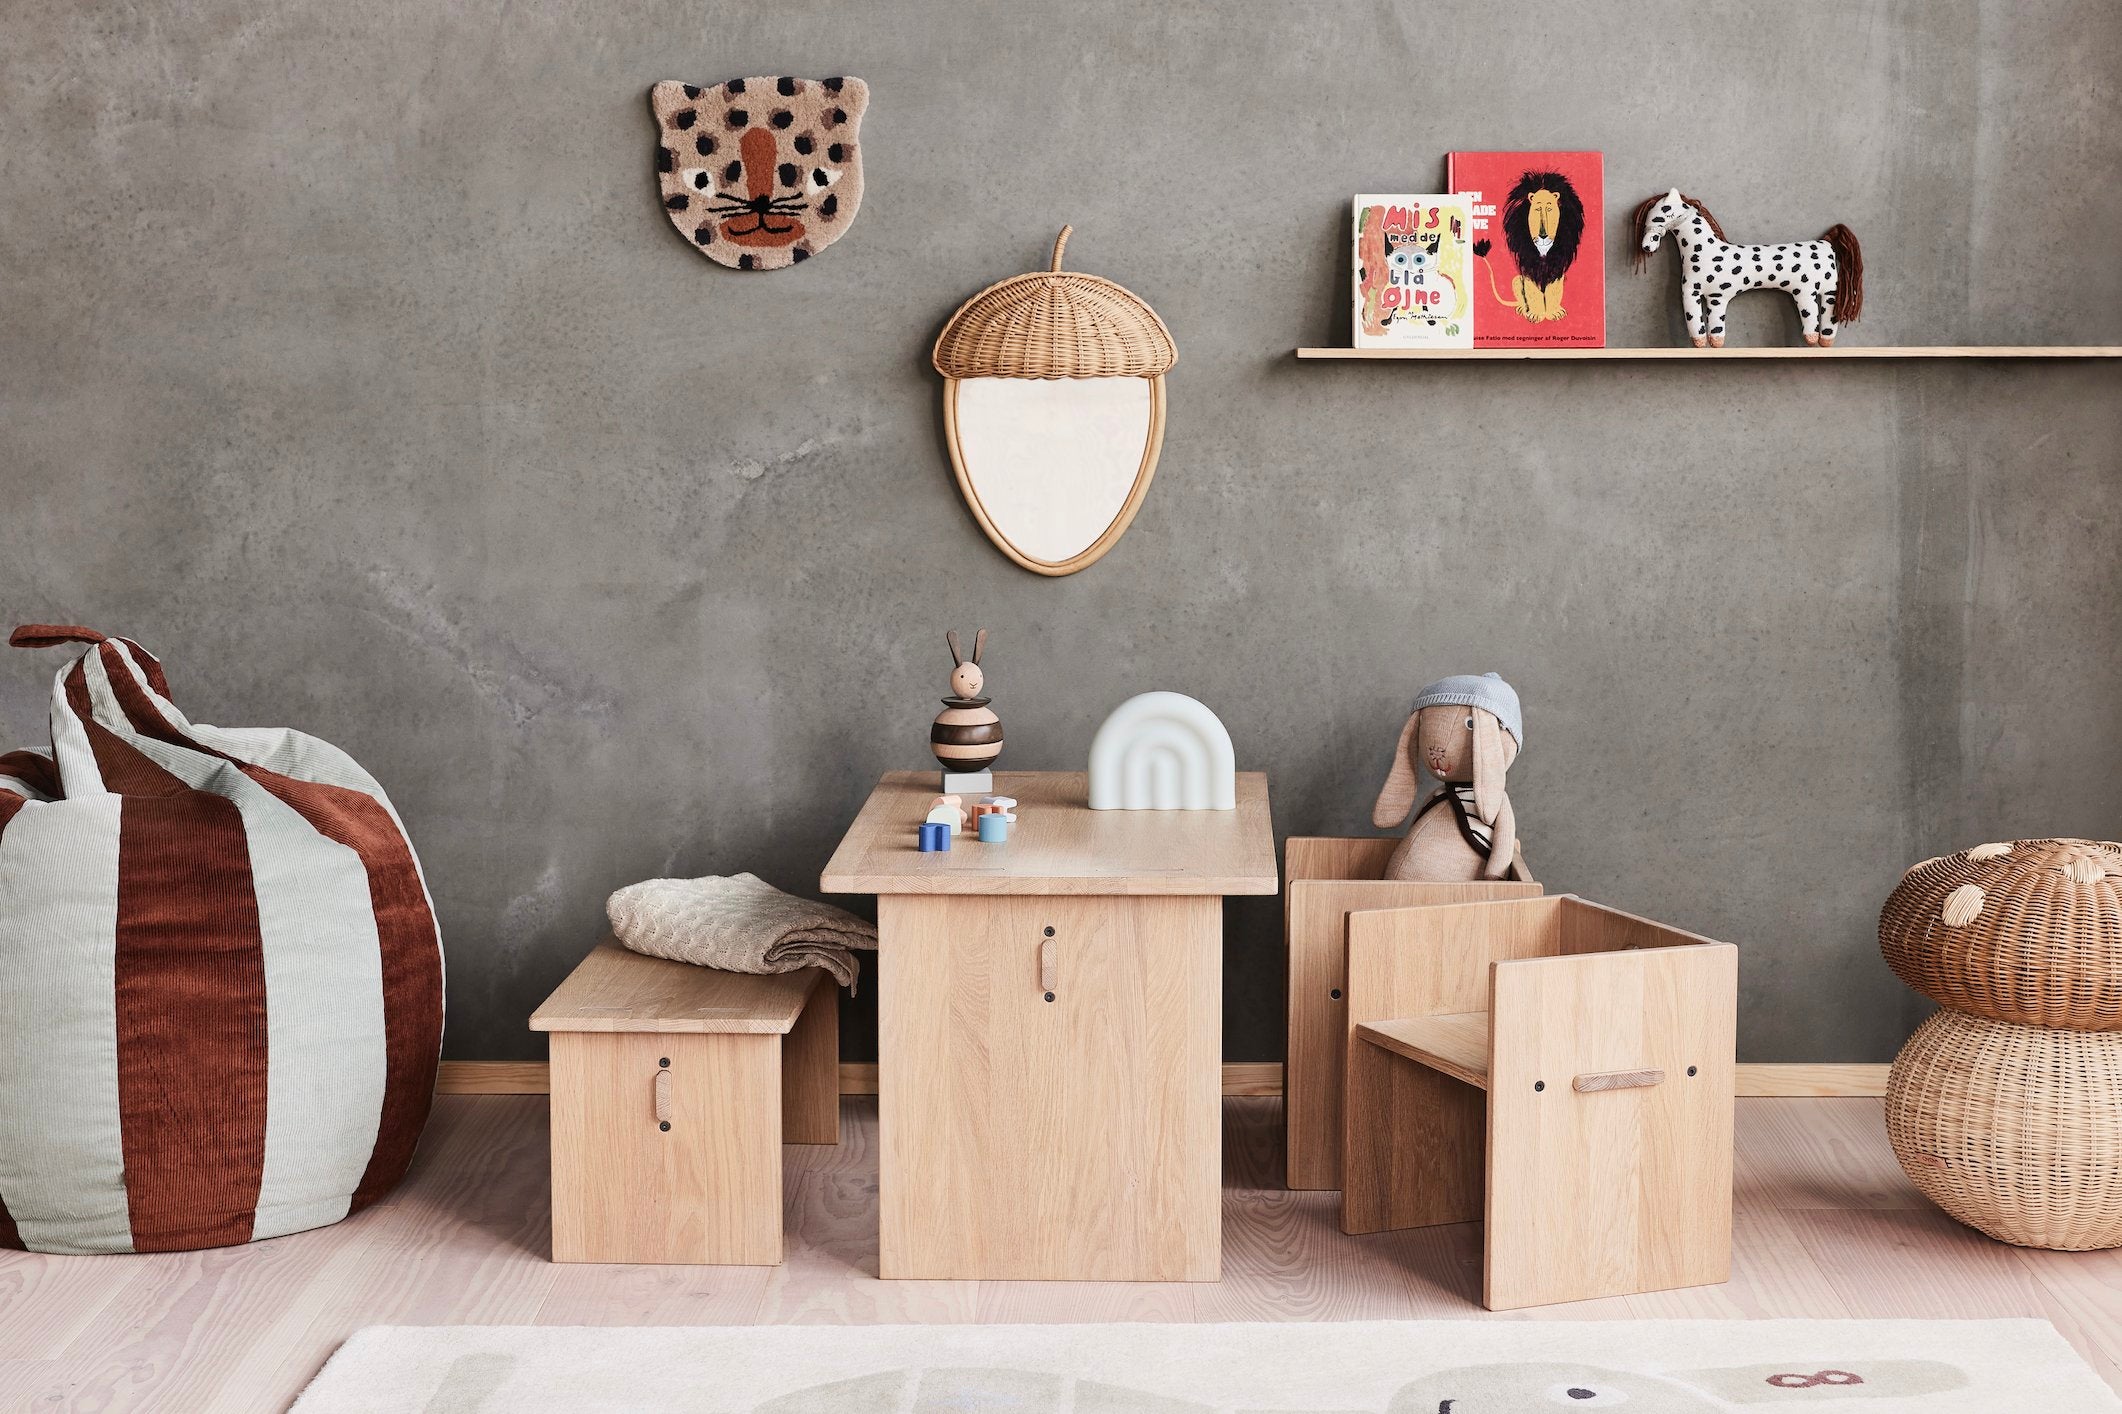 maison-d-abri-collectie-kinderkamer-meubels-accessoires-oyoy-living-design-furniture